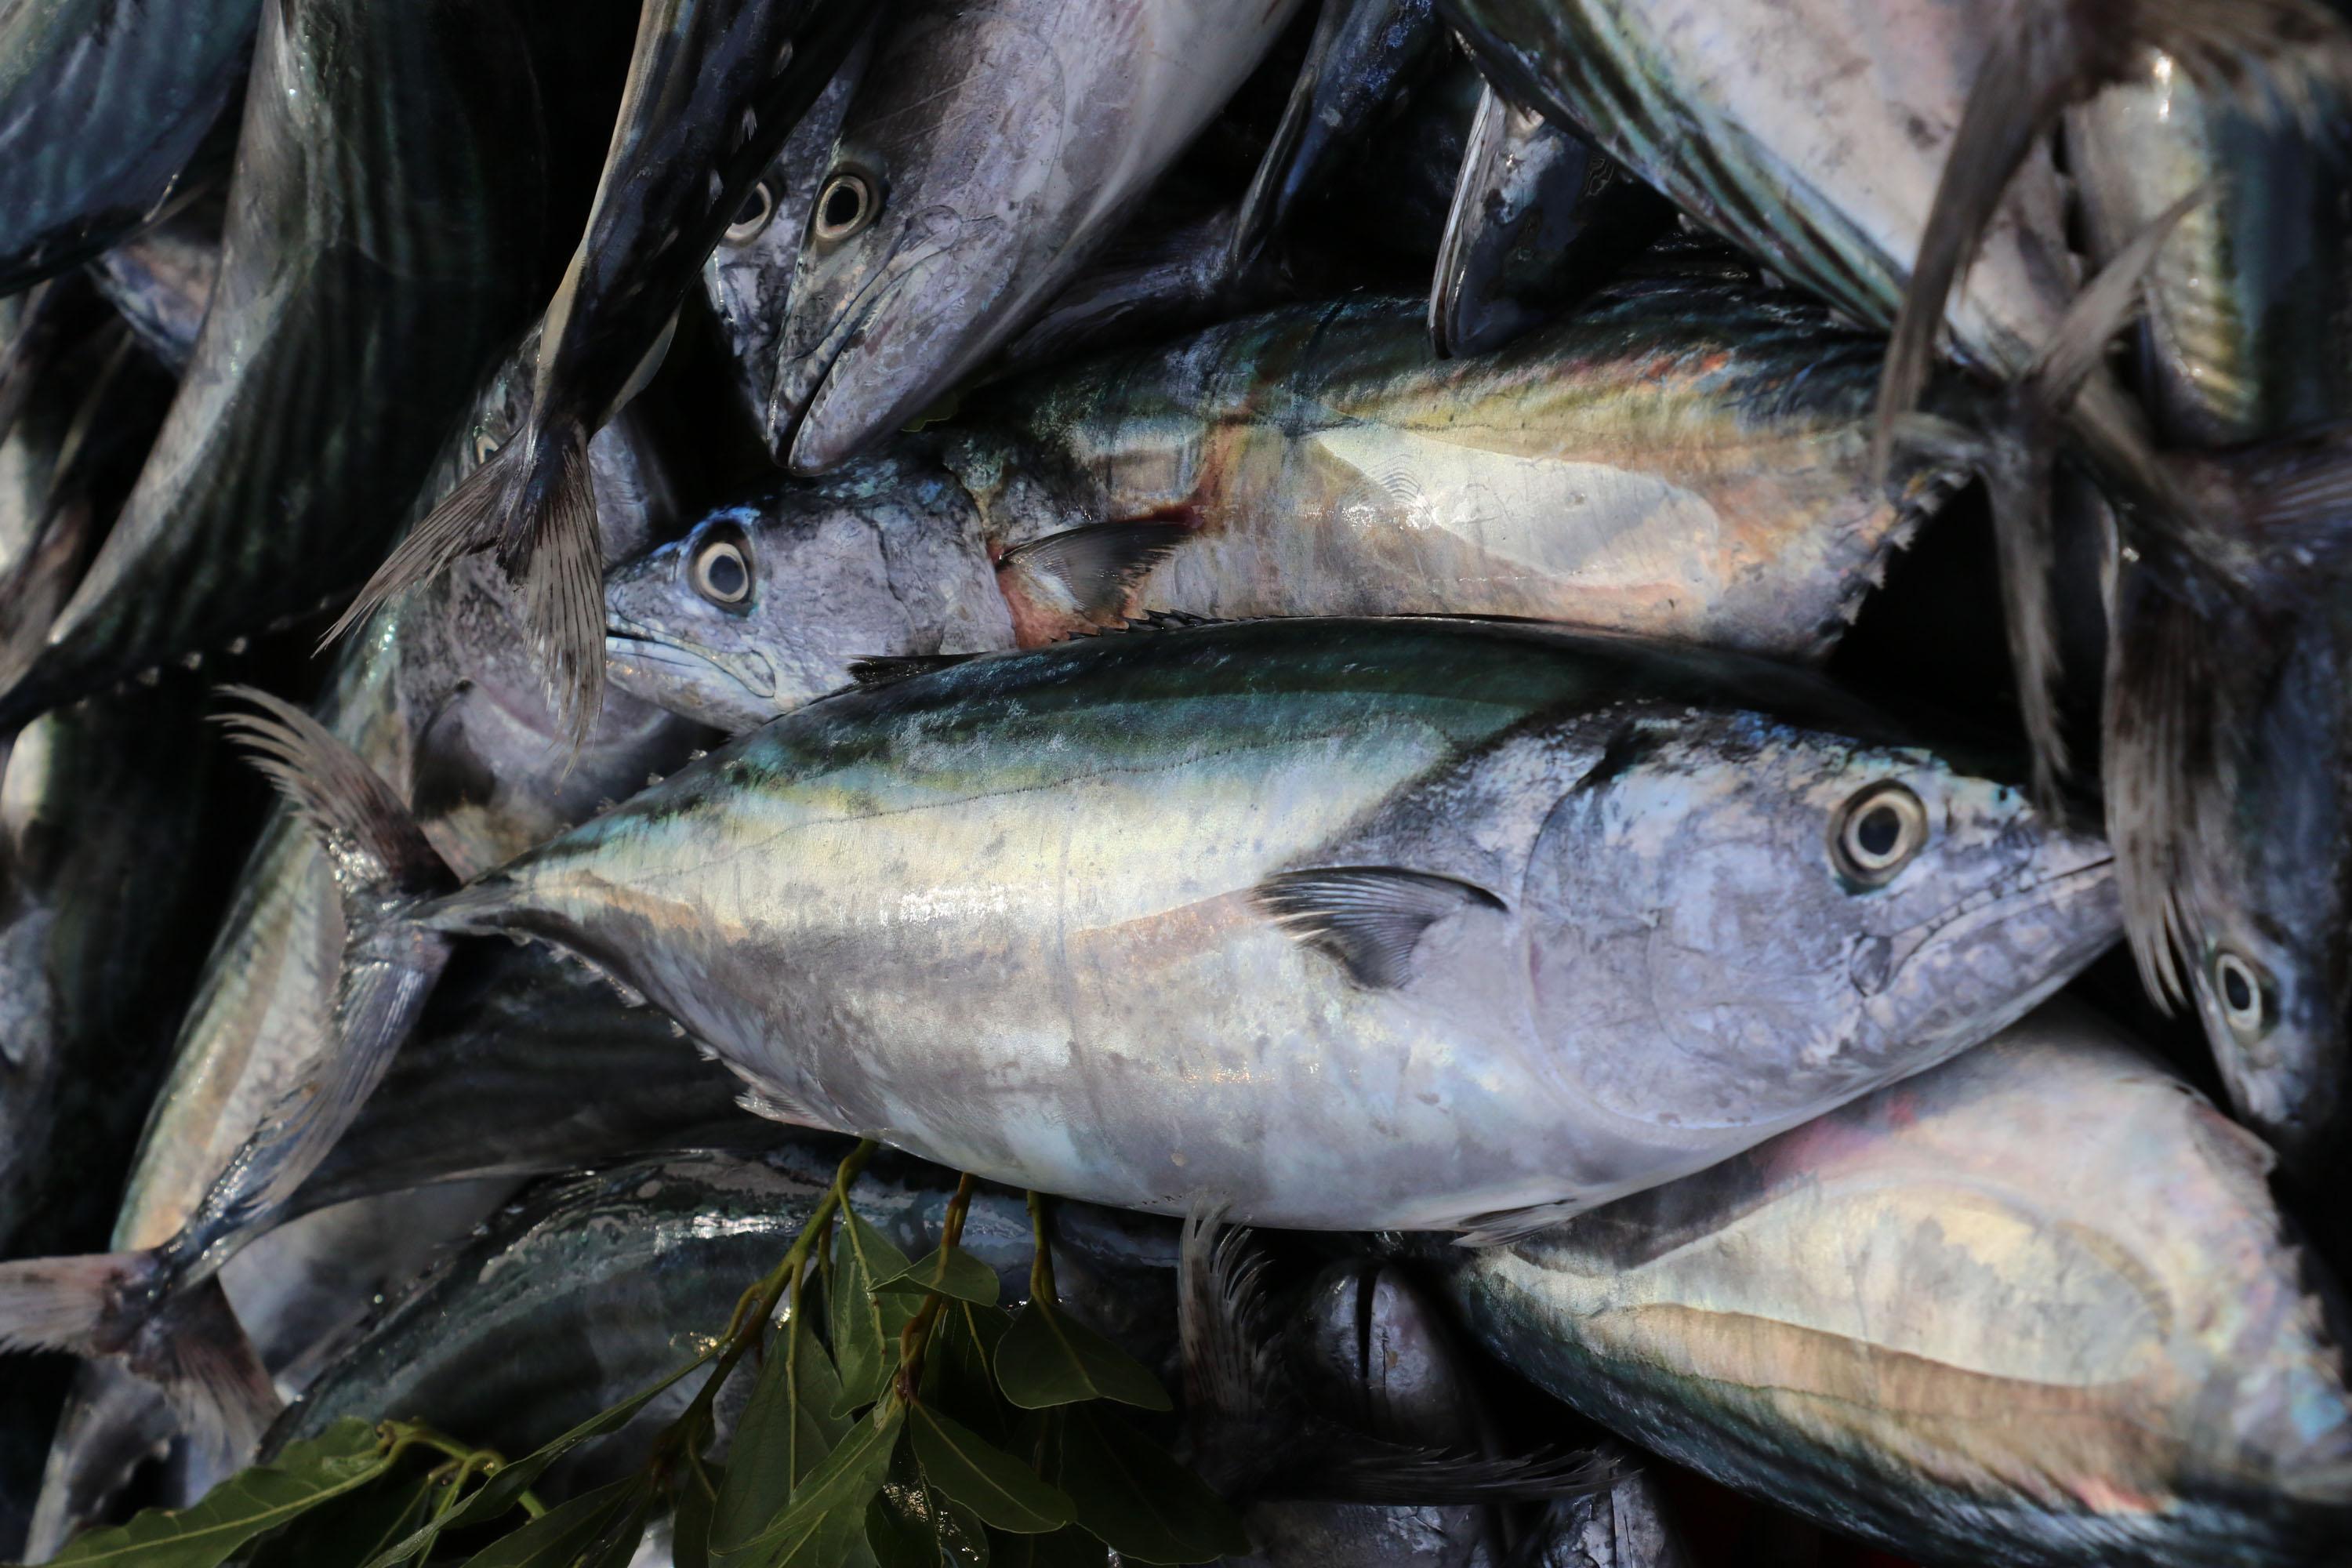 Deniz ürünlerinde cıva tehlikesi... Vedat Milor: Midye yemek, pil yemek gibidir